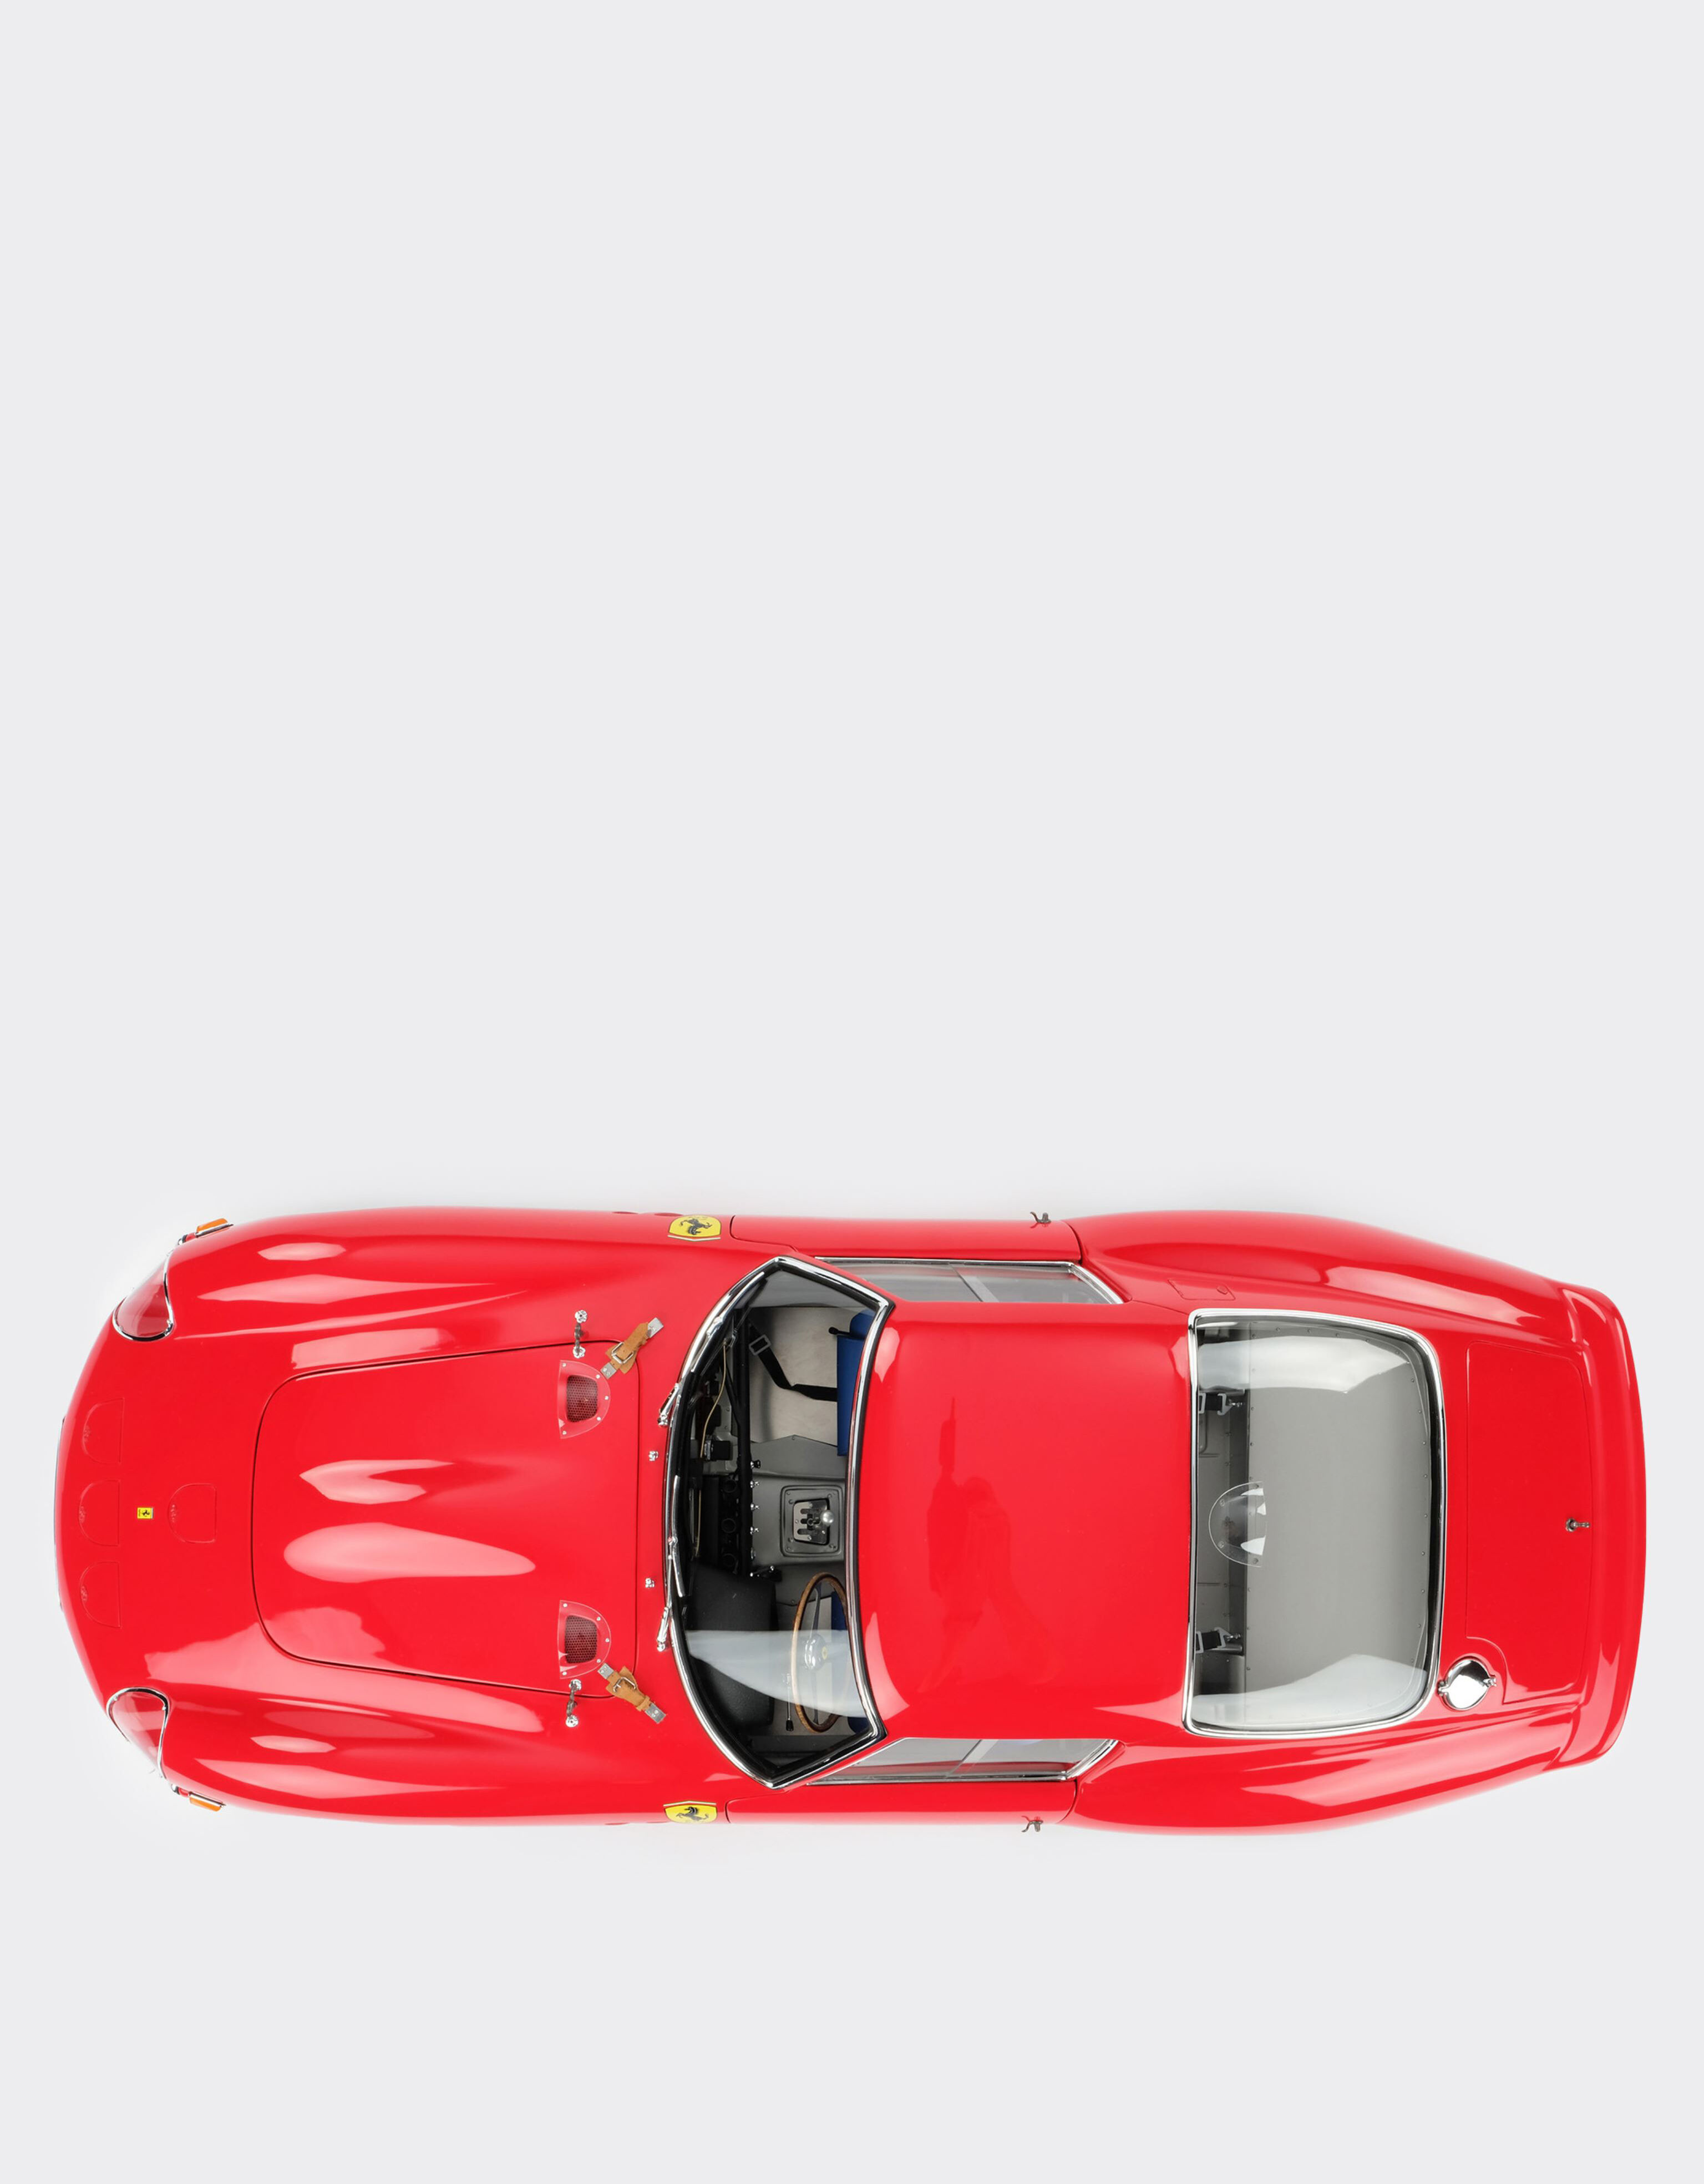 Ferrari Modellino della Ferrari 250 GTO in scala 1:8 MULTICOLORE L1127f